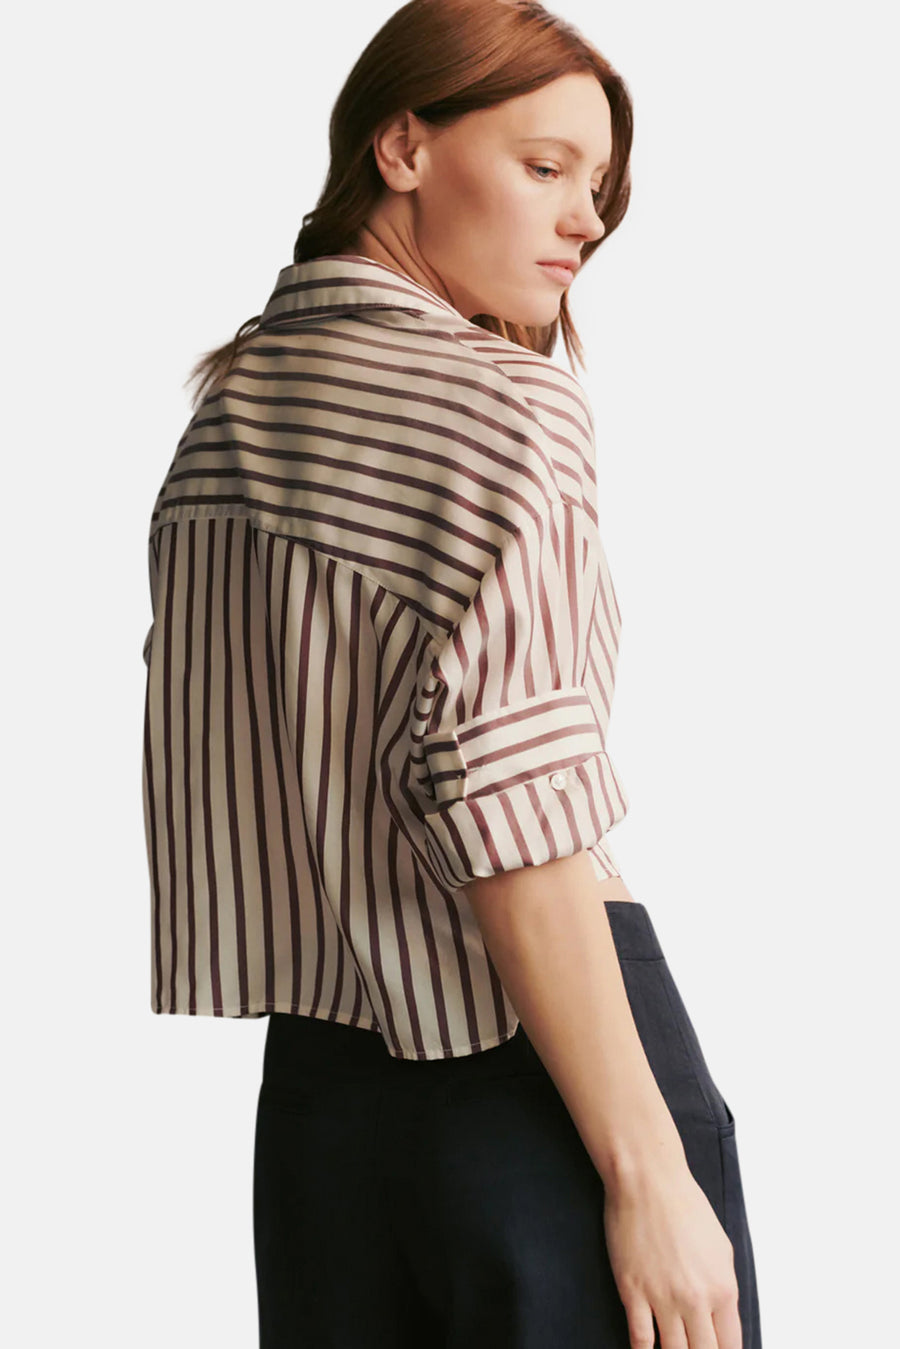 Next Ex Shirt in Striped Silk Voile White/Brown